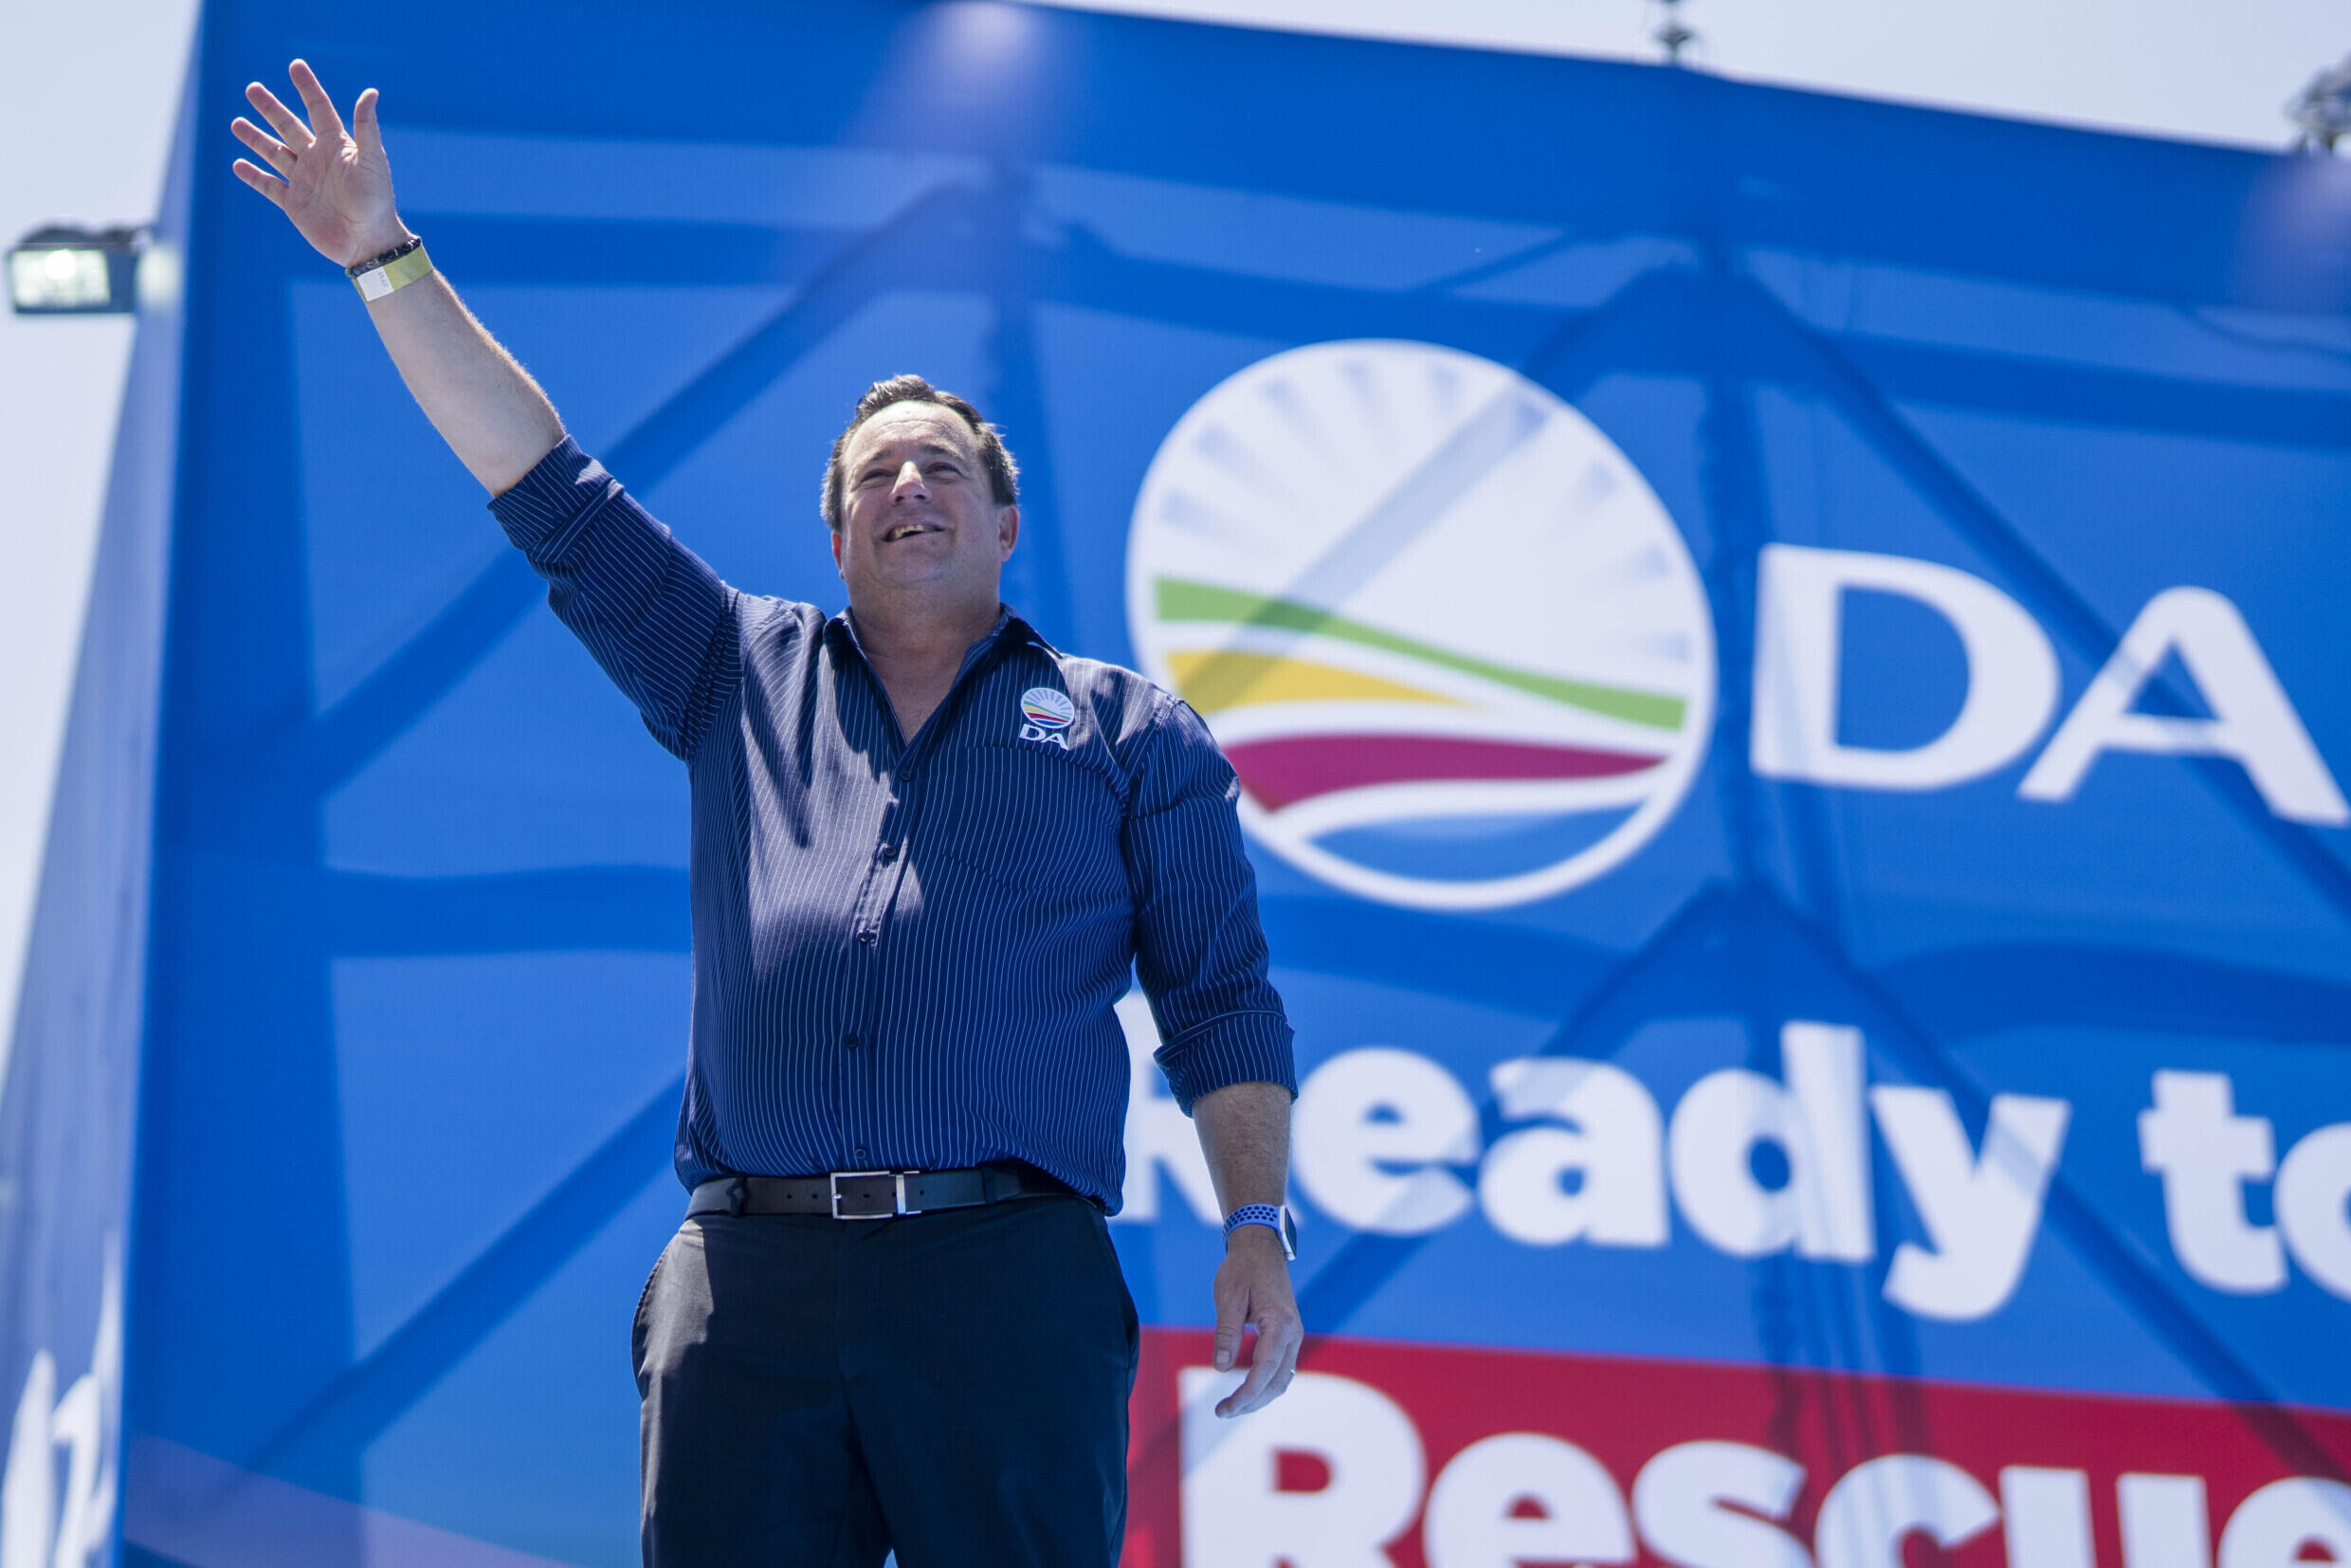 le leader du parti de l'opposition DA a persisté et signé après le spot publicitaire de son parti, qui a provoqué un tollé.